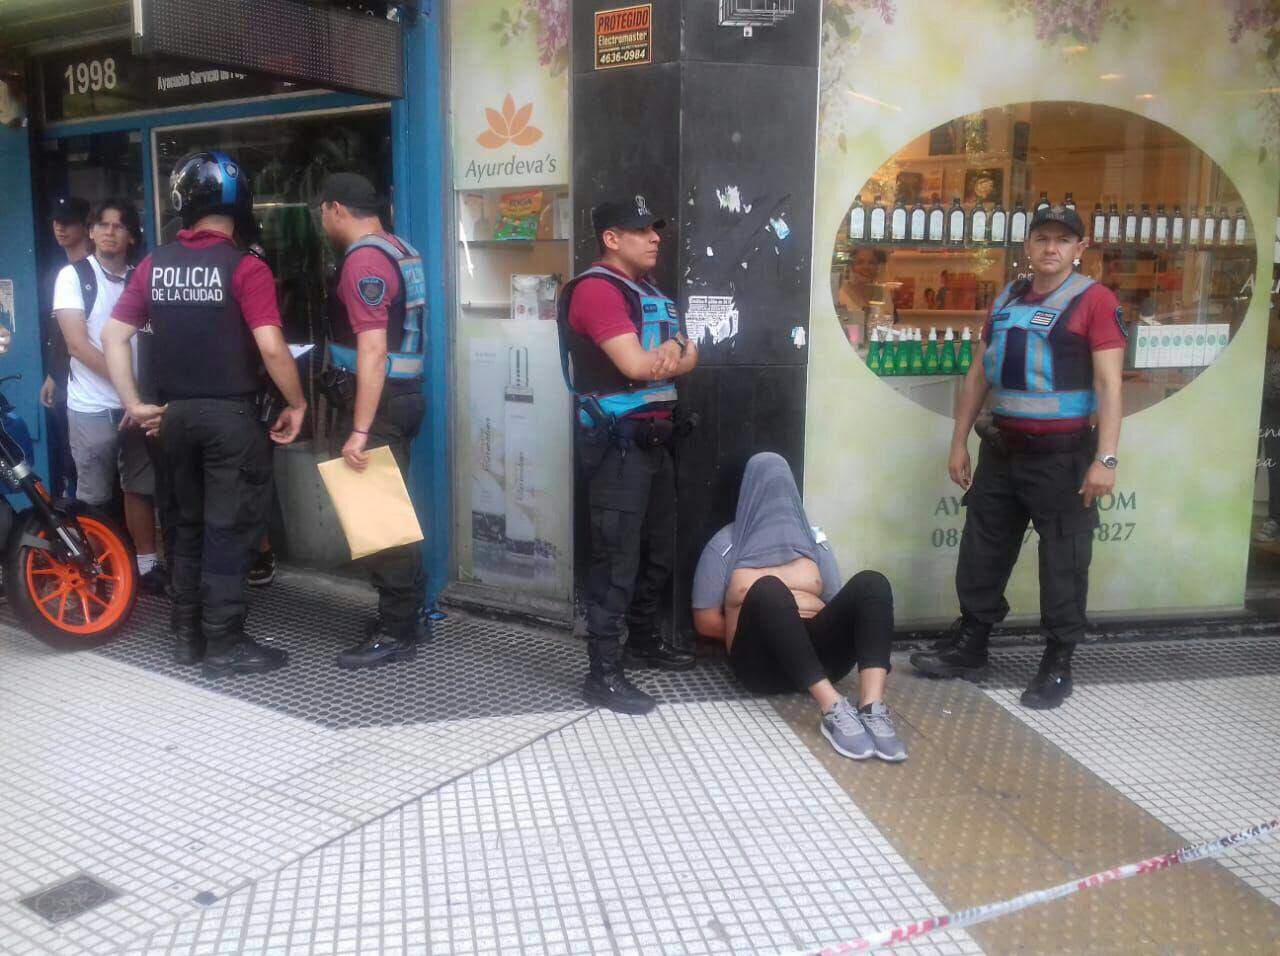  Policía de la Ciudad capturó a un ladrón de zapaterías en Recoleta